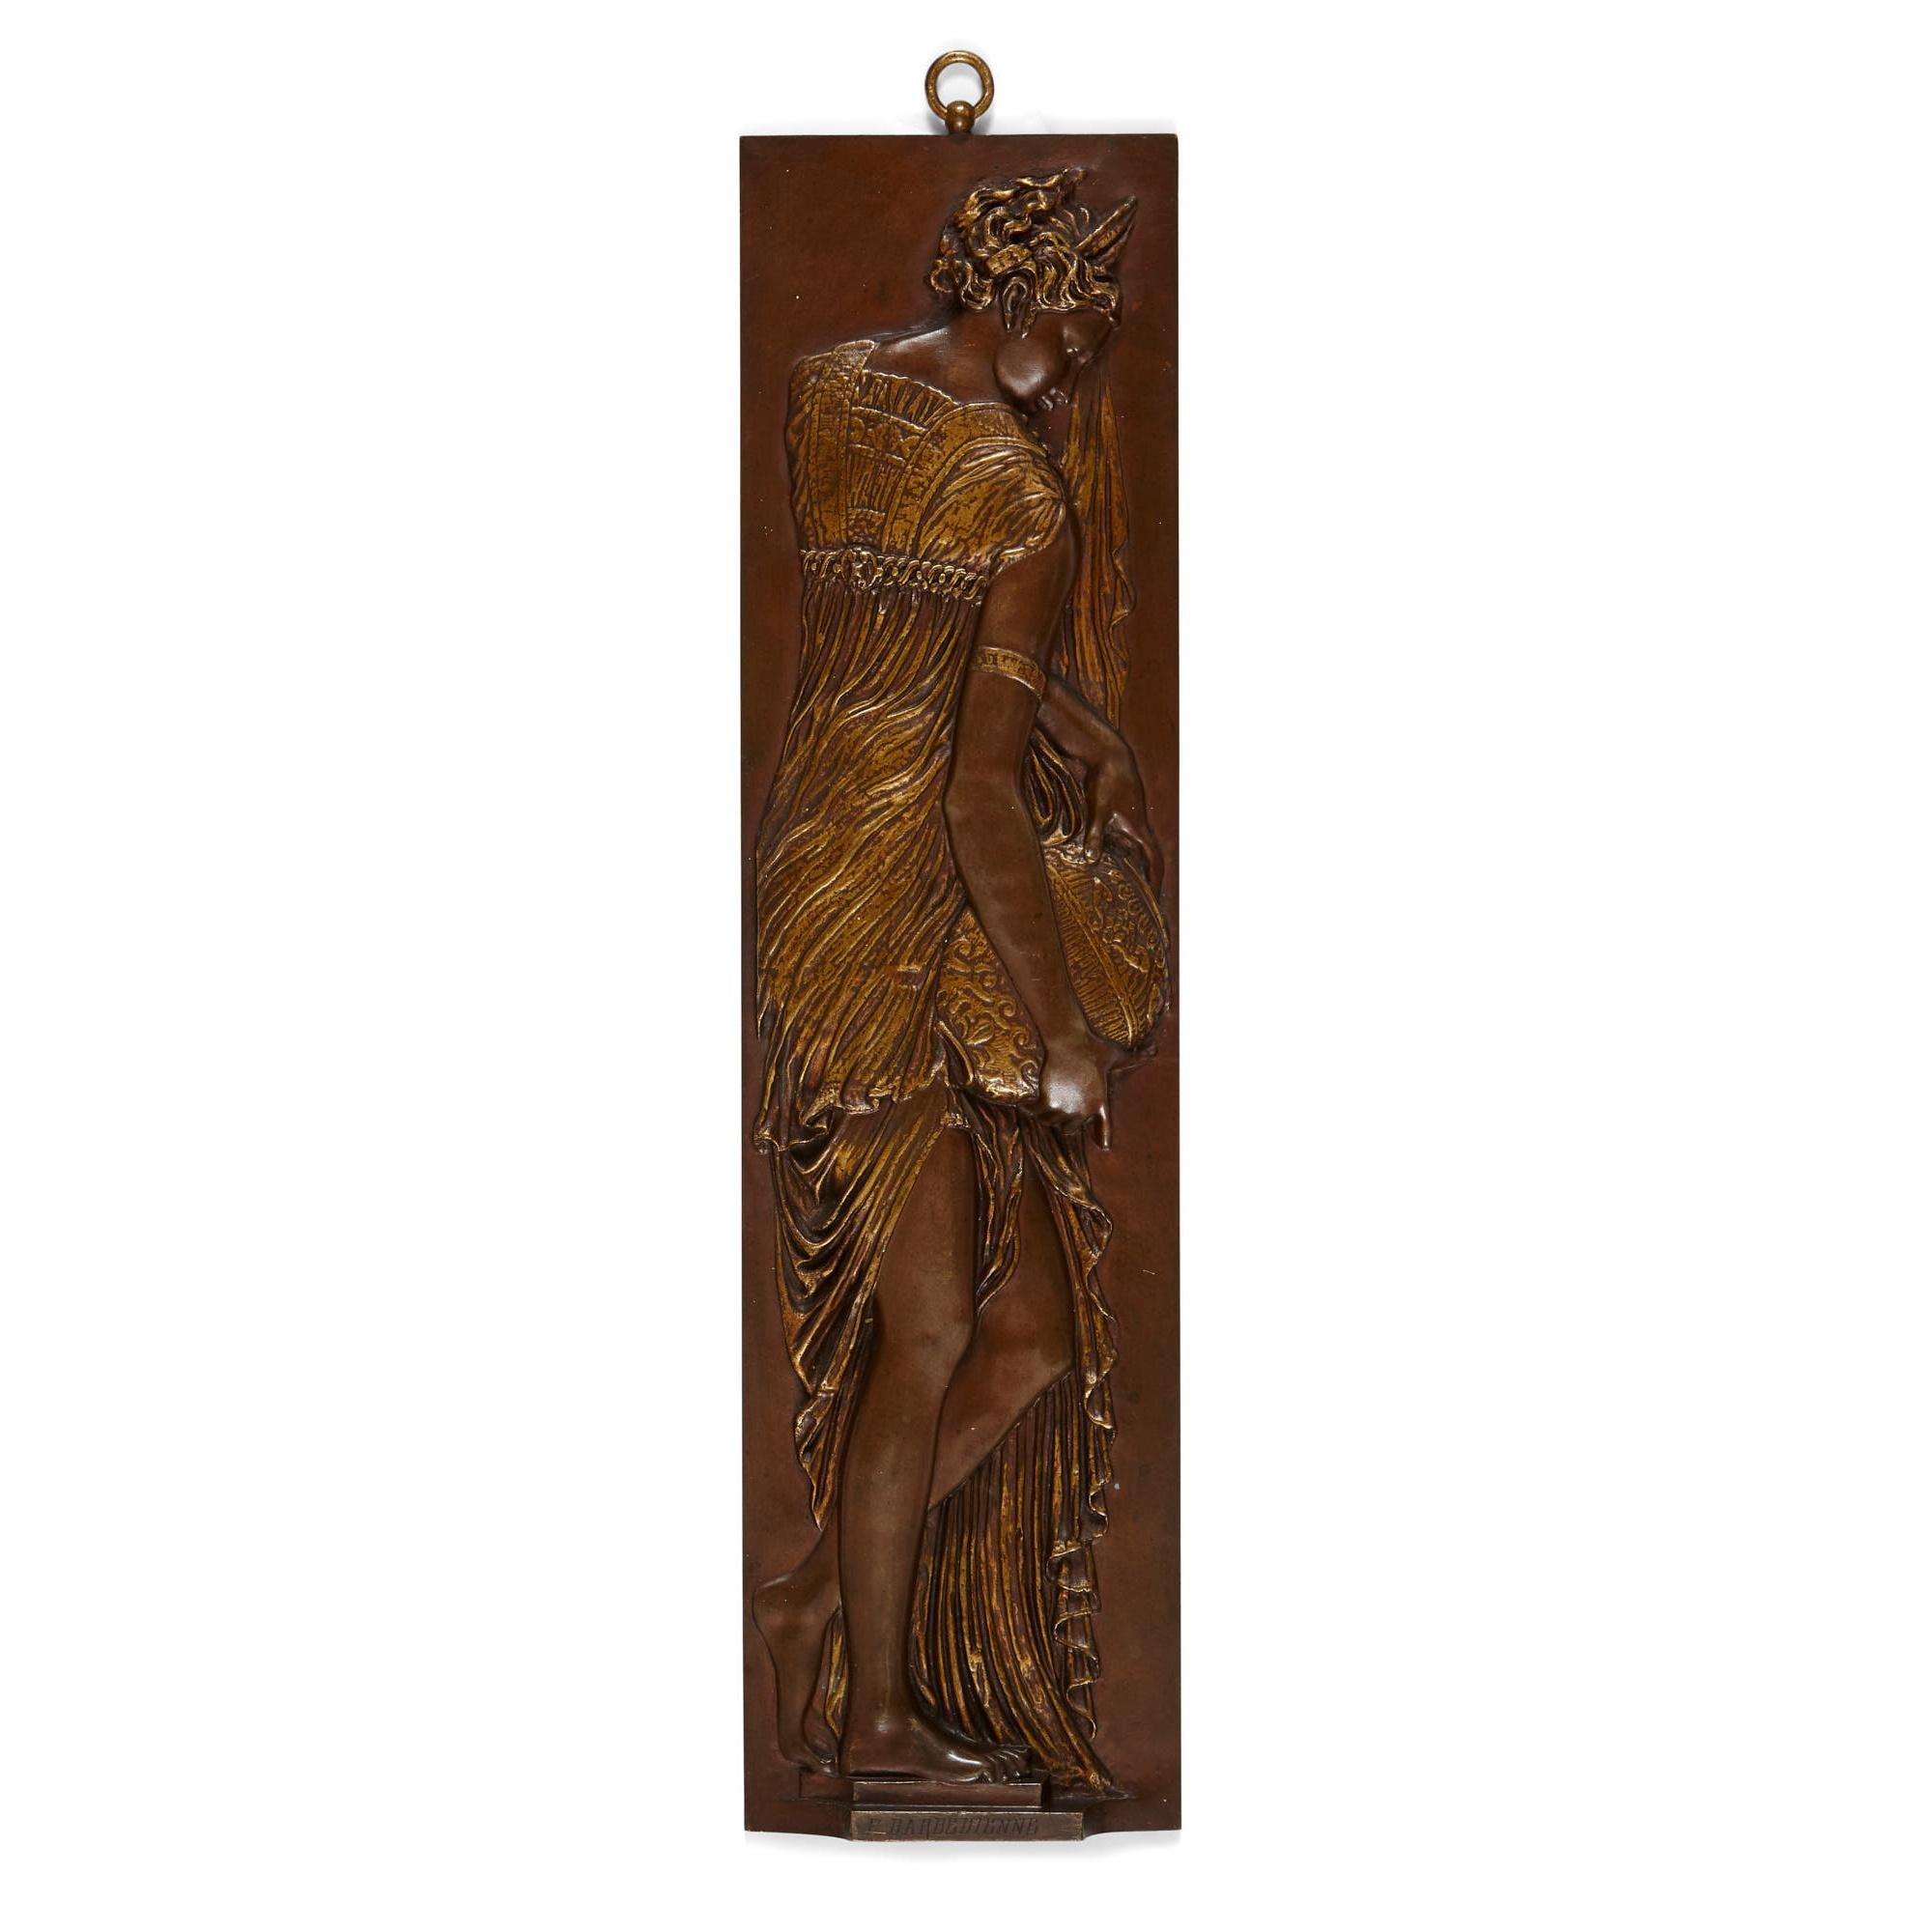 Quatre plaques de bronze anciennes représentant des nymphes aquatiques, par Ferdinand Barbedienne
Français, 19ème siècle.
Mesures : Hauteur 47cm, largeur 12cm, profondeur 2.5cm

Finement moulés en relief dans du bronze patiné avec une patine dorée